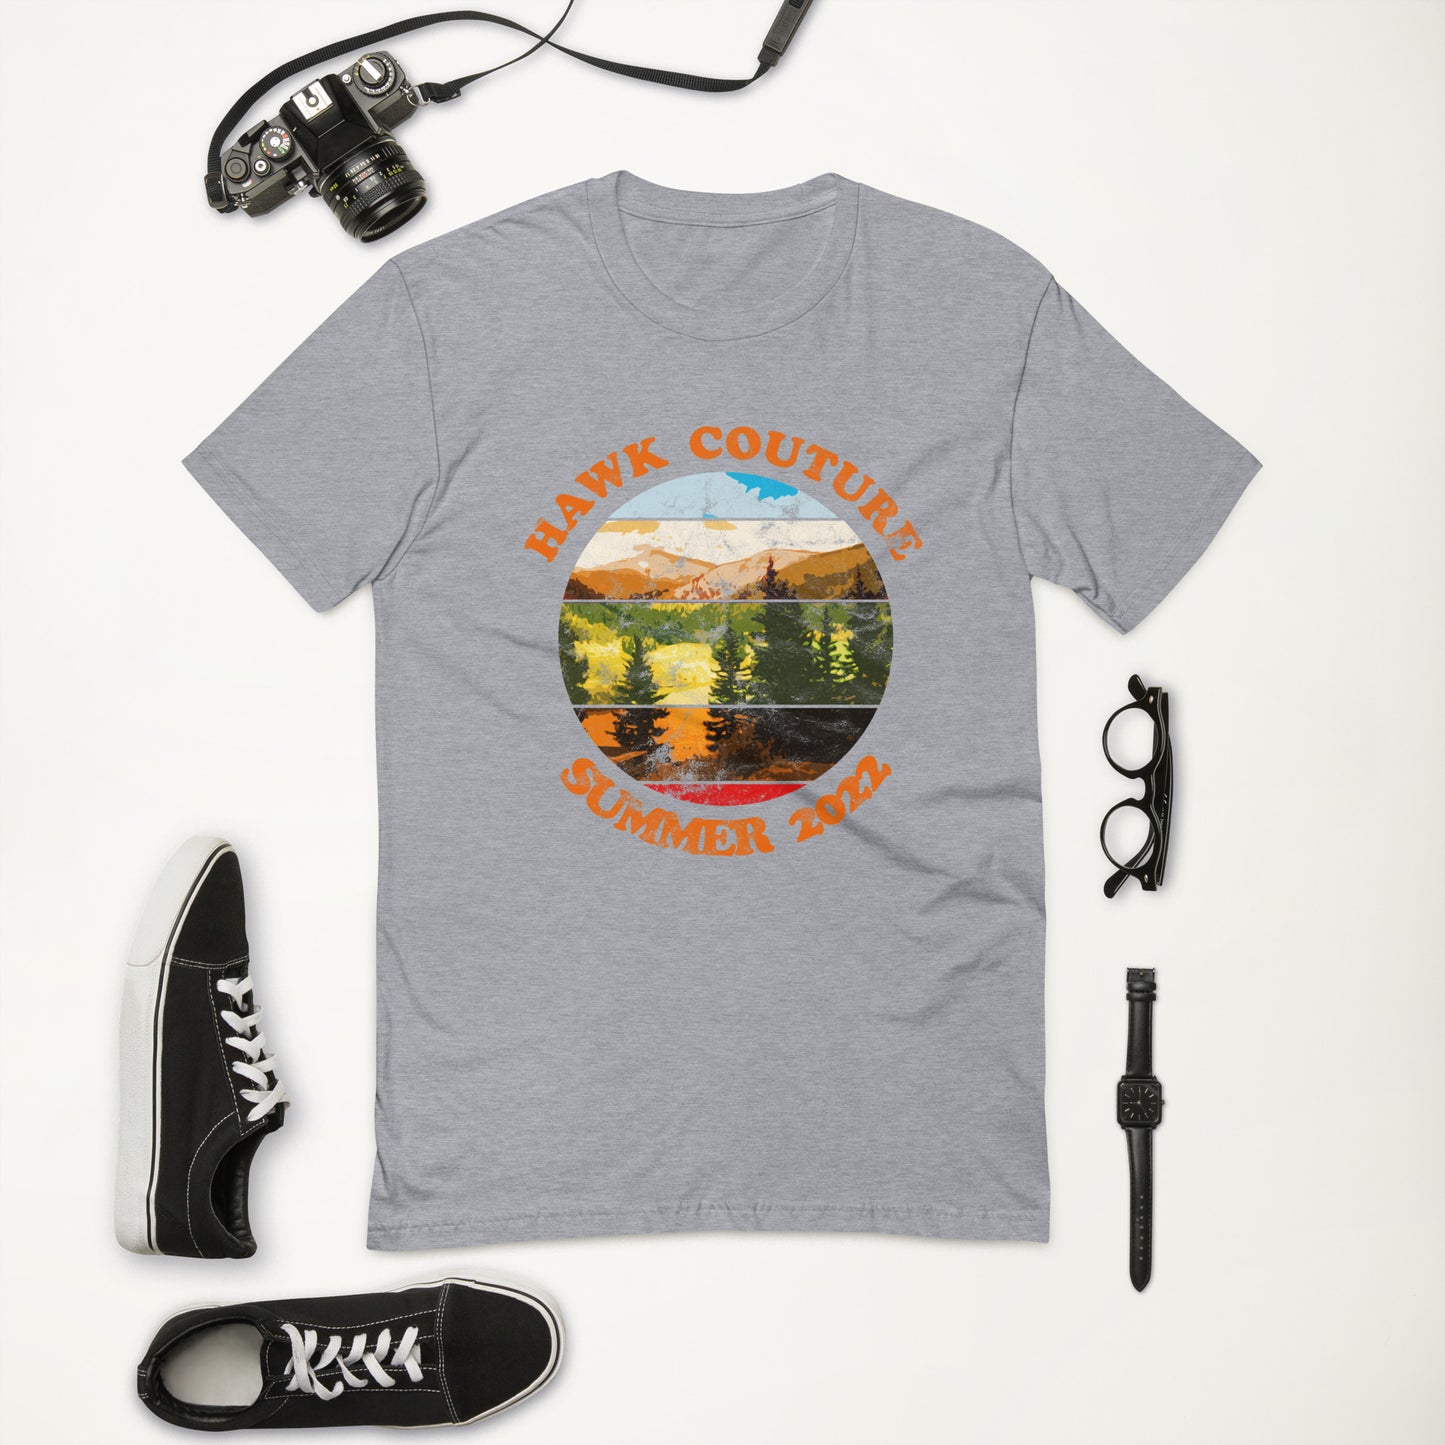 Vintage Summer Camp T-shirt